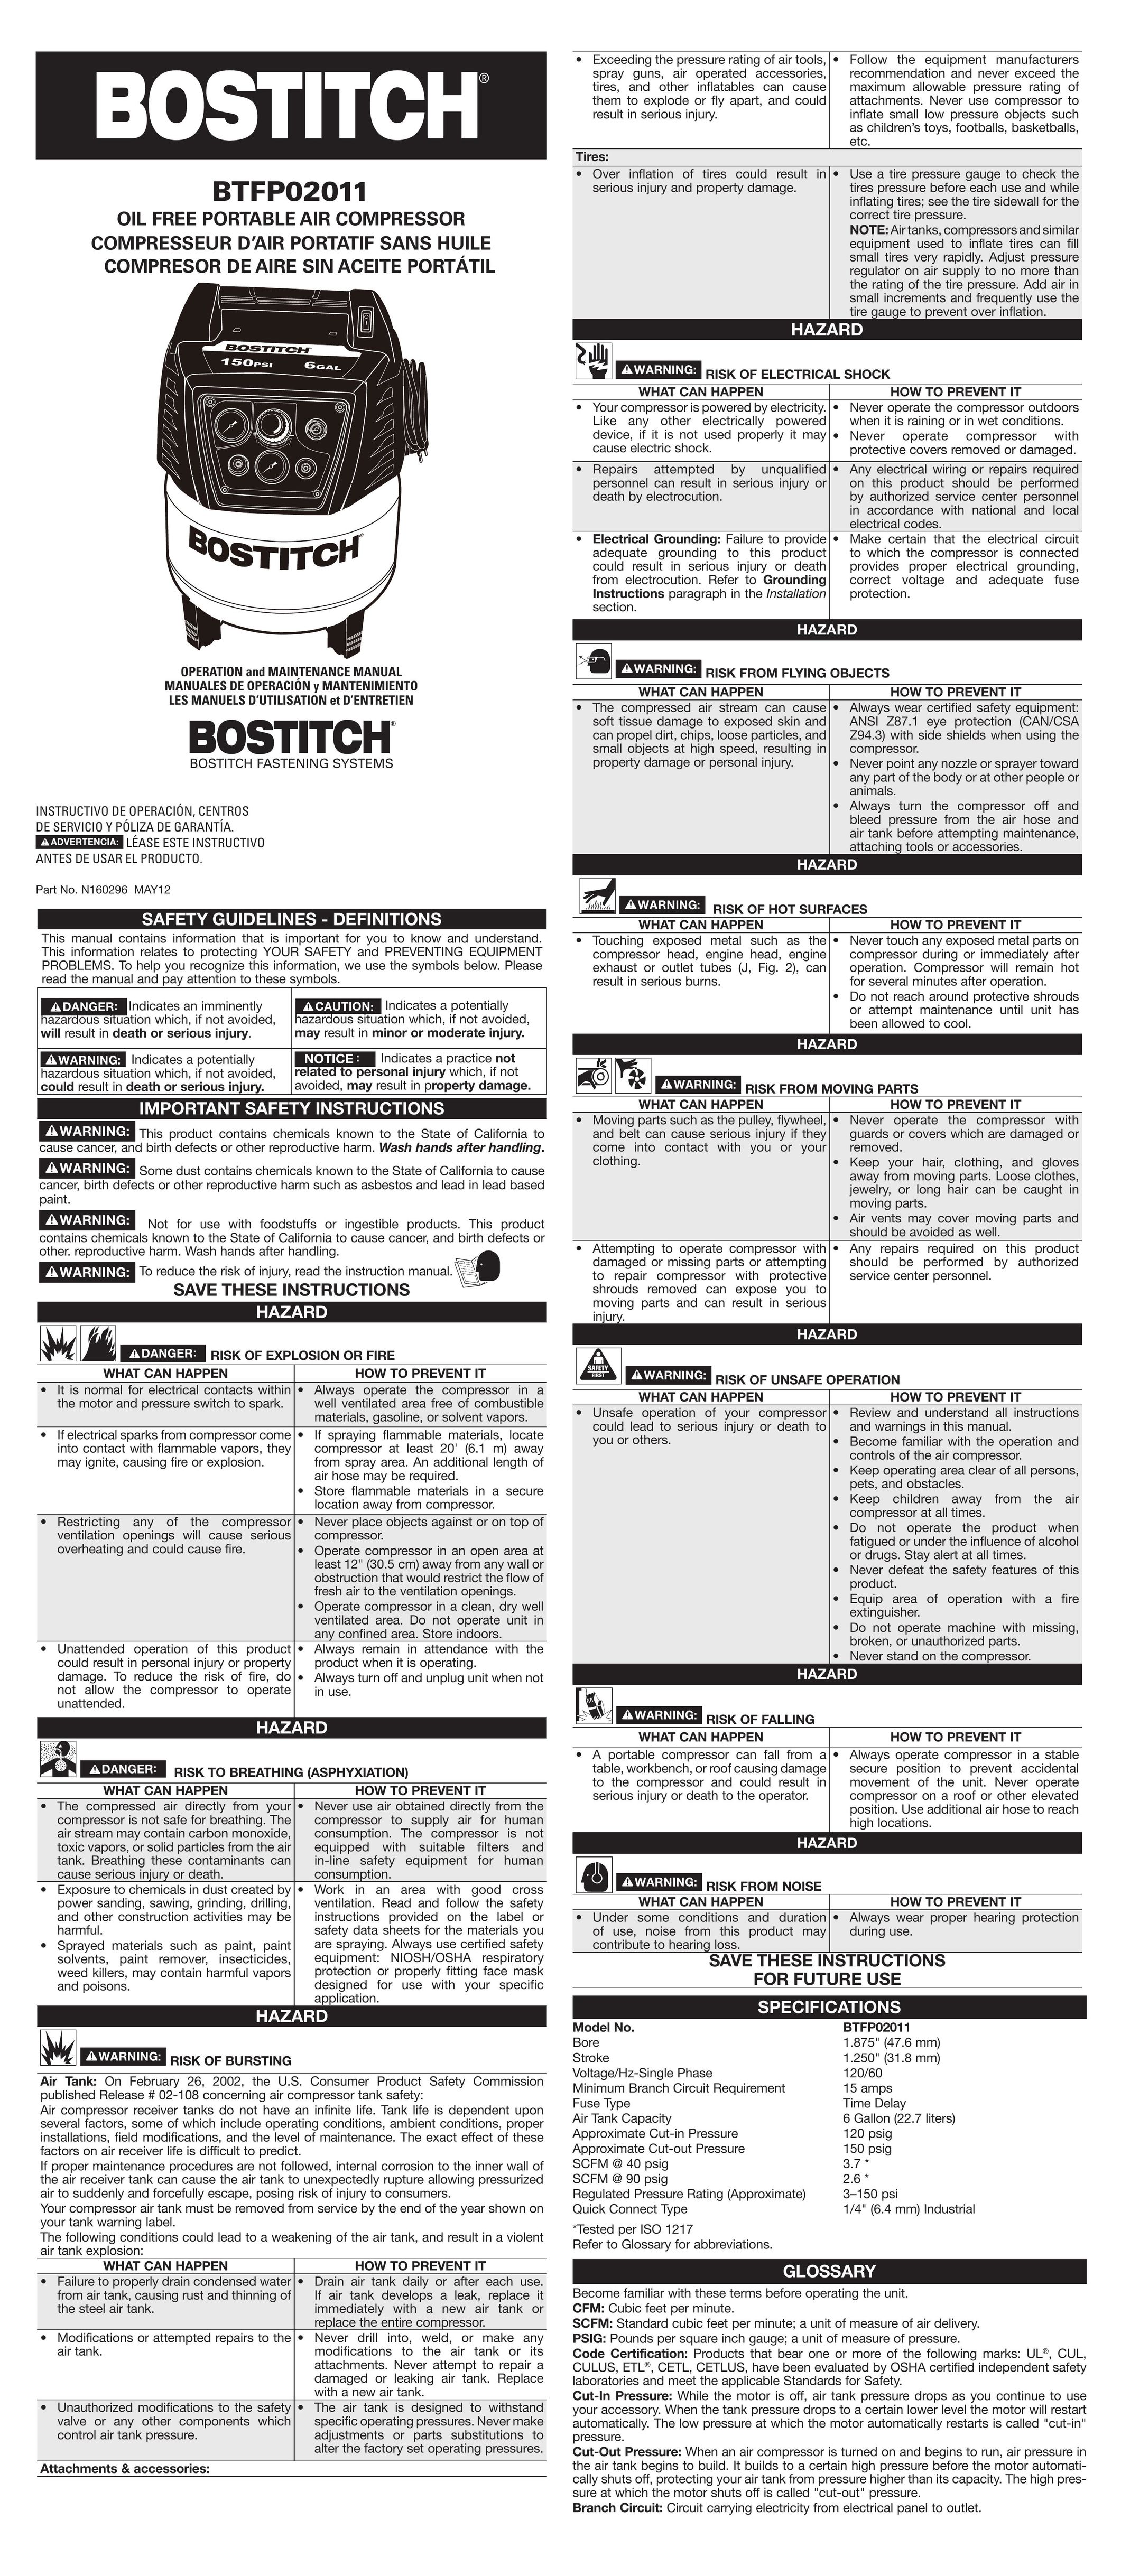 Bostitch BTFP02011 Air Compressor User Manual